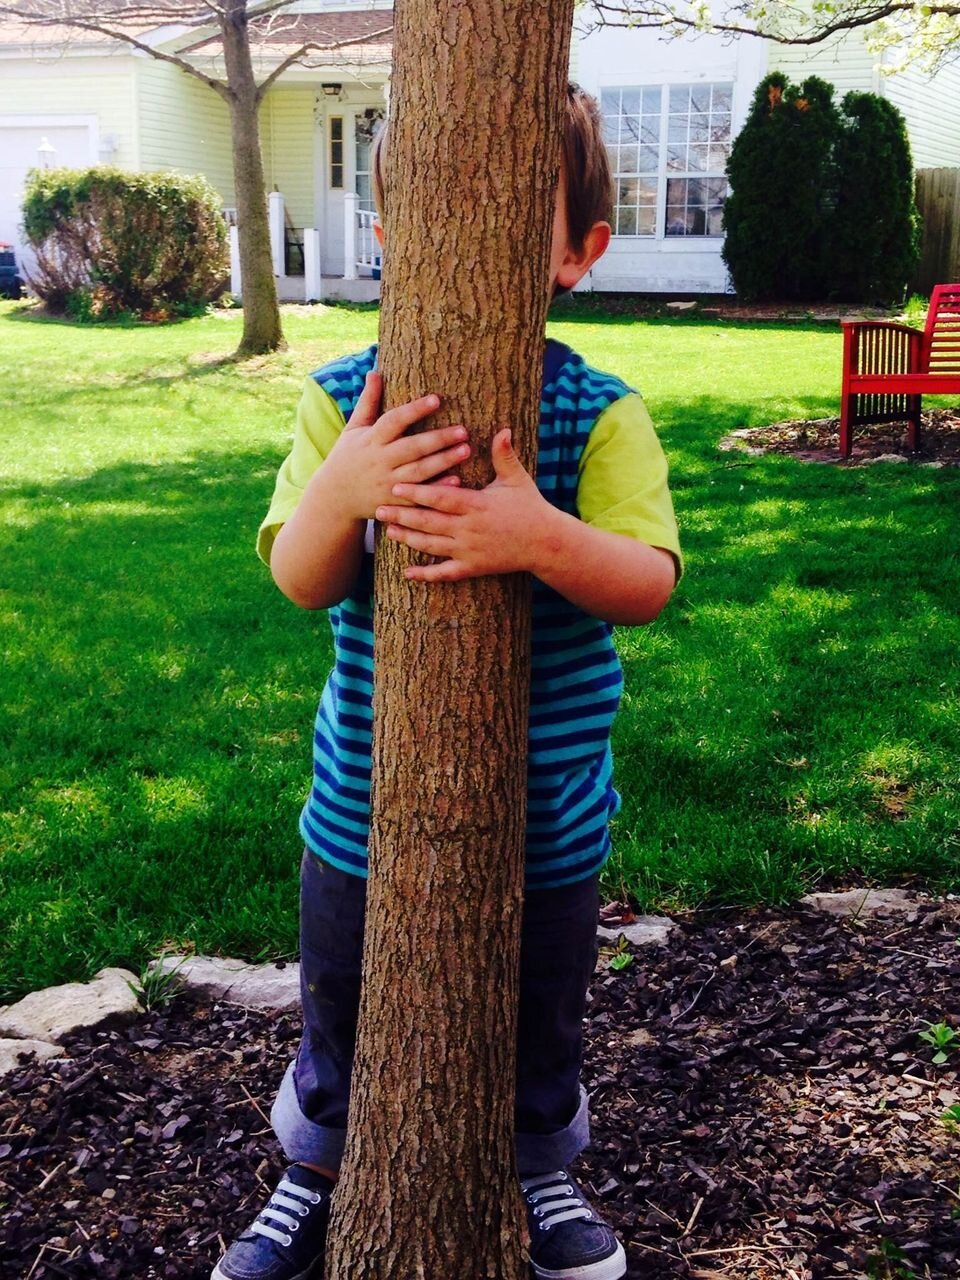 Игра прятки прячутся. Прячется за деревом. Спрятался за деревом. Ребенок прячется. Мальчик спрятался за дерево.